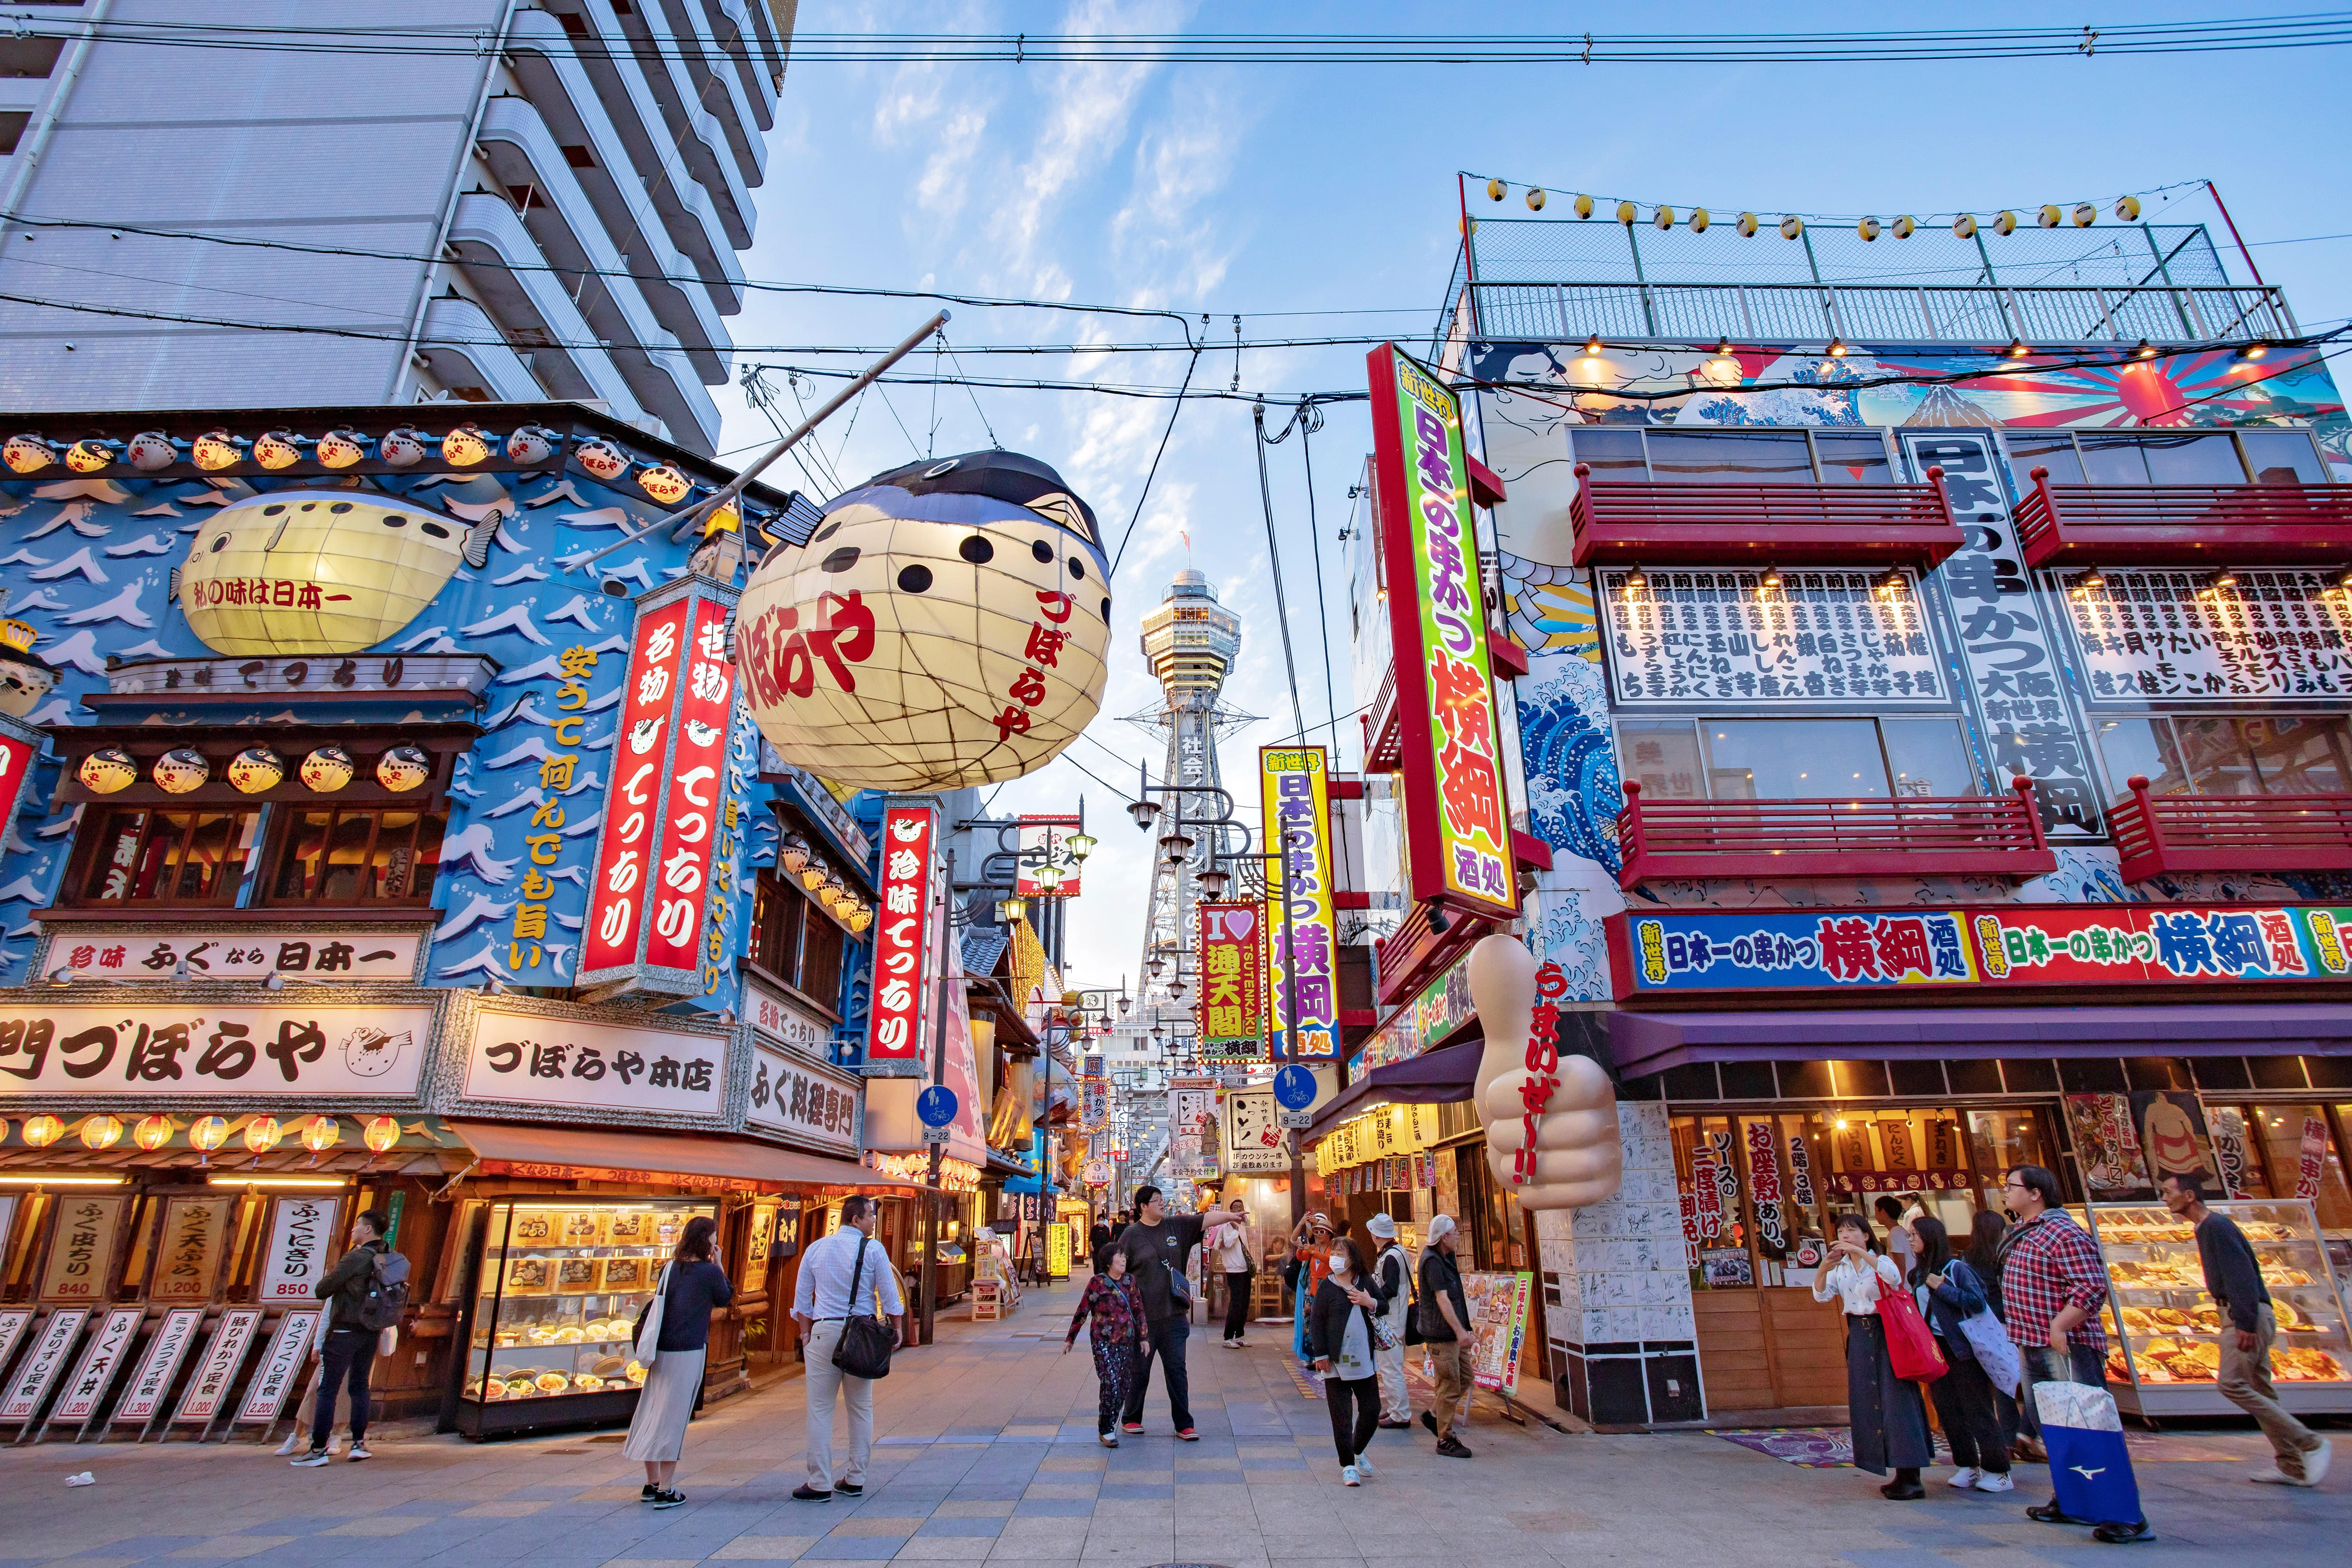 Best Rentals in Osaka